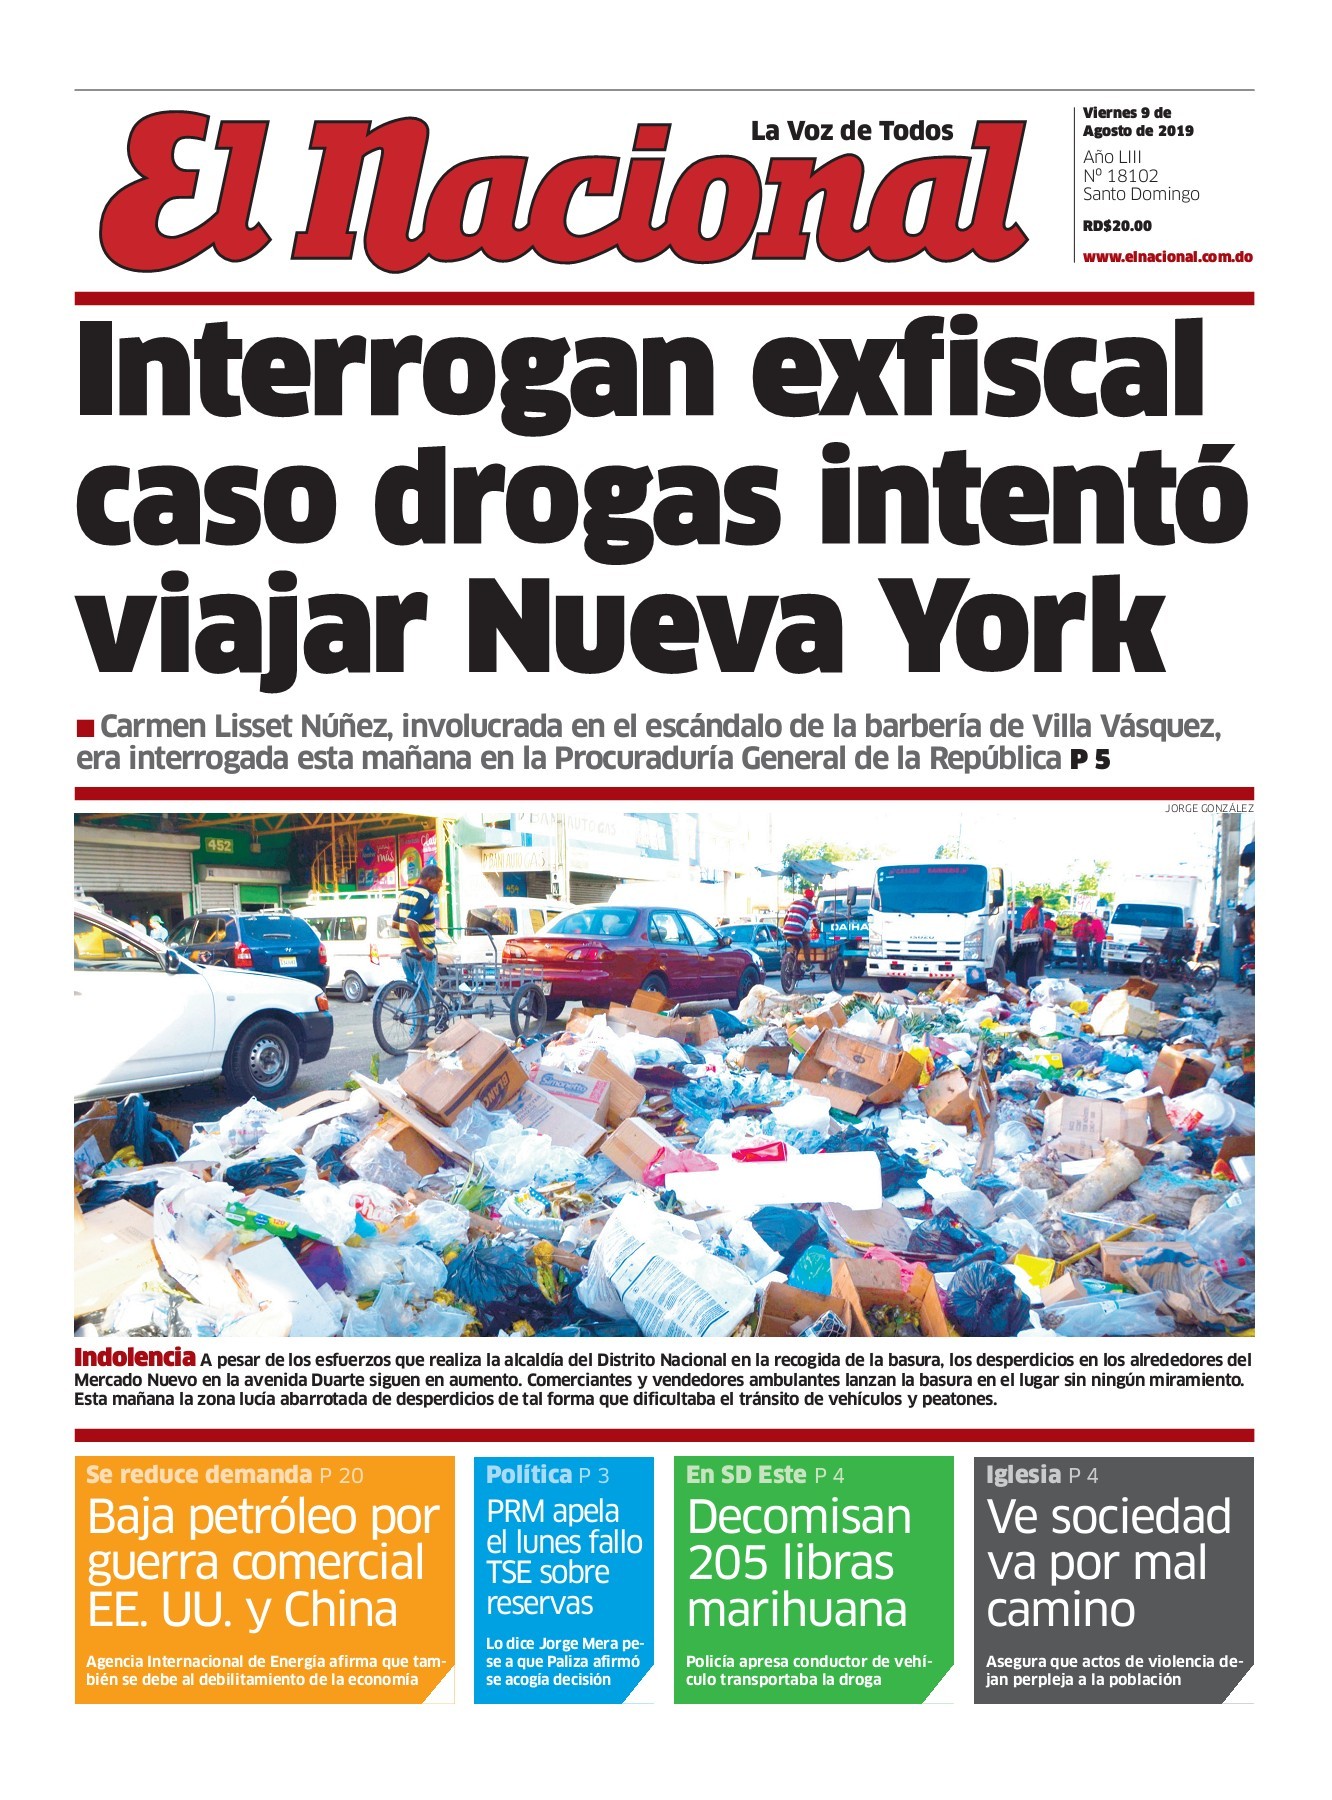 Portada Periódico El Nacional, Domingo 11 de Agosto, 2019